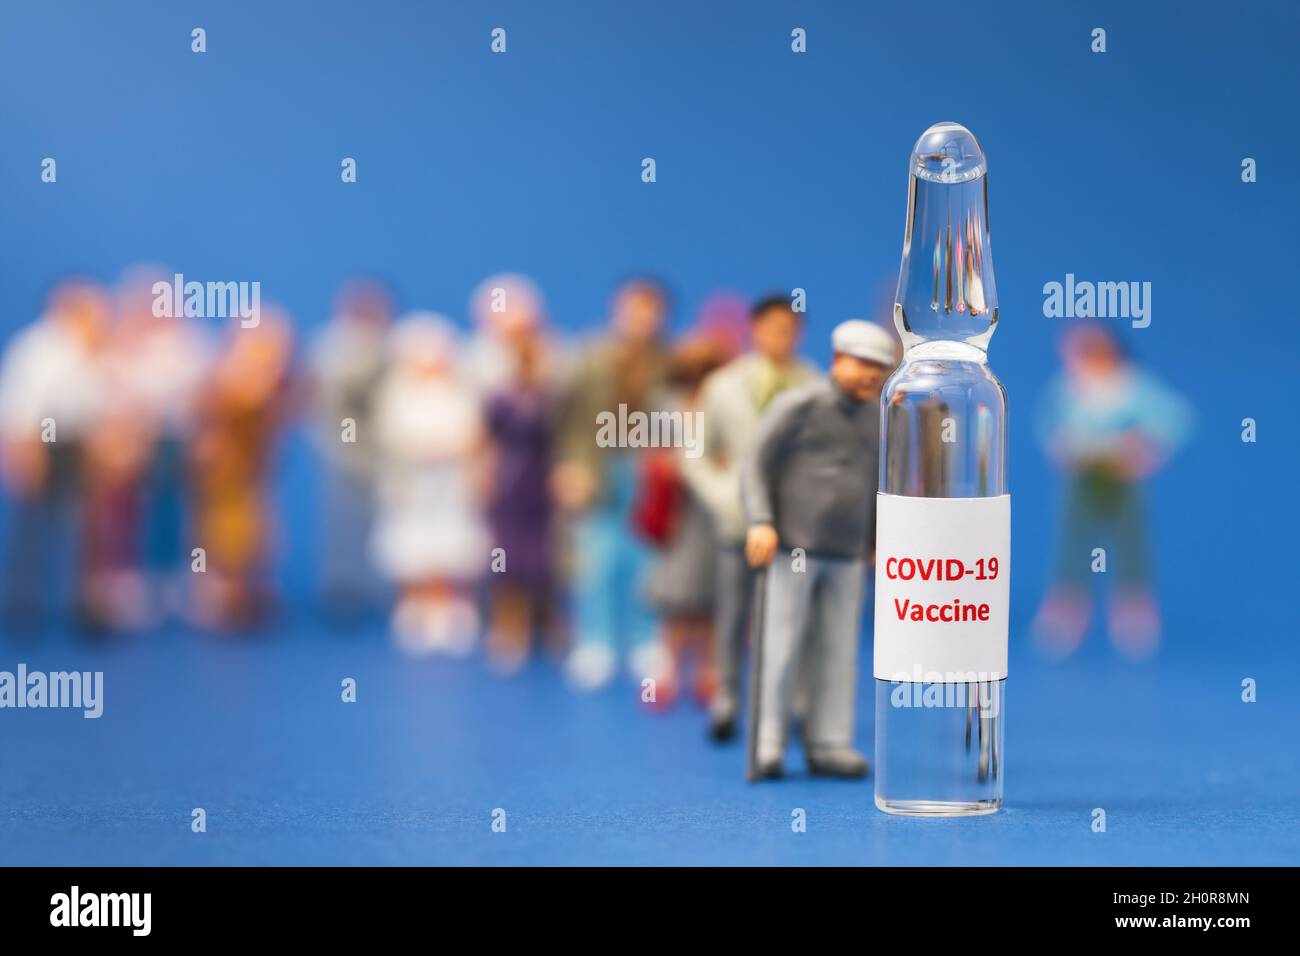 Los hombres de juguete y la ampolla con una vacuna sobre un fondo azul, concepto, las personas se alinean para la vacunación contra el coronavirus Foto de stock